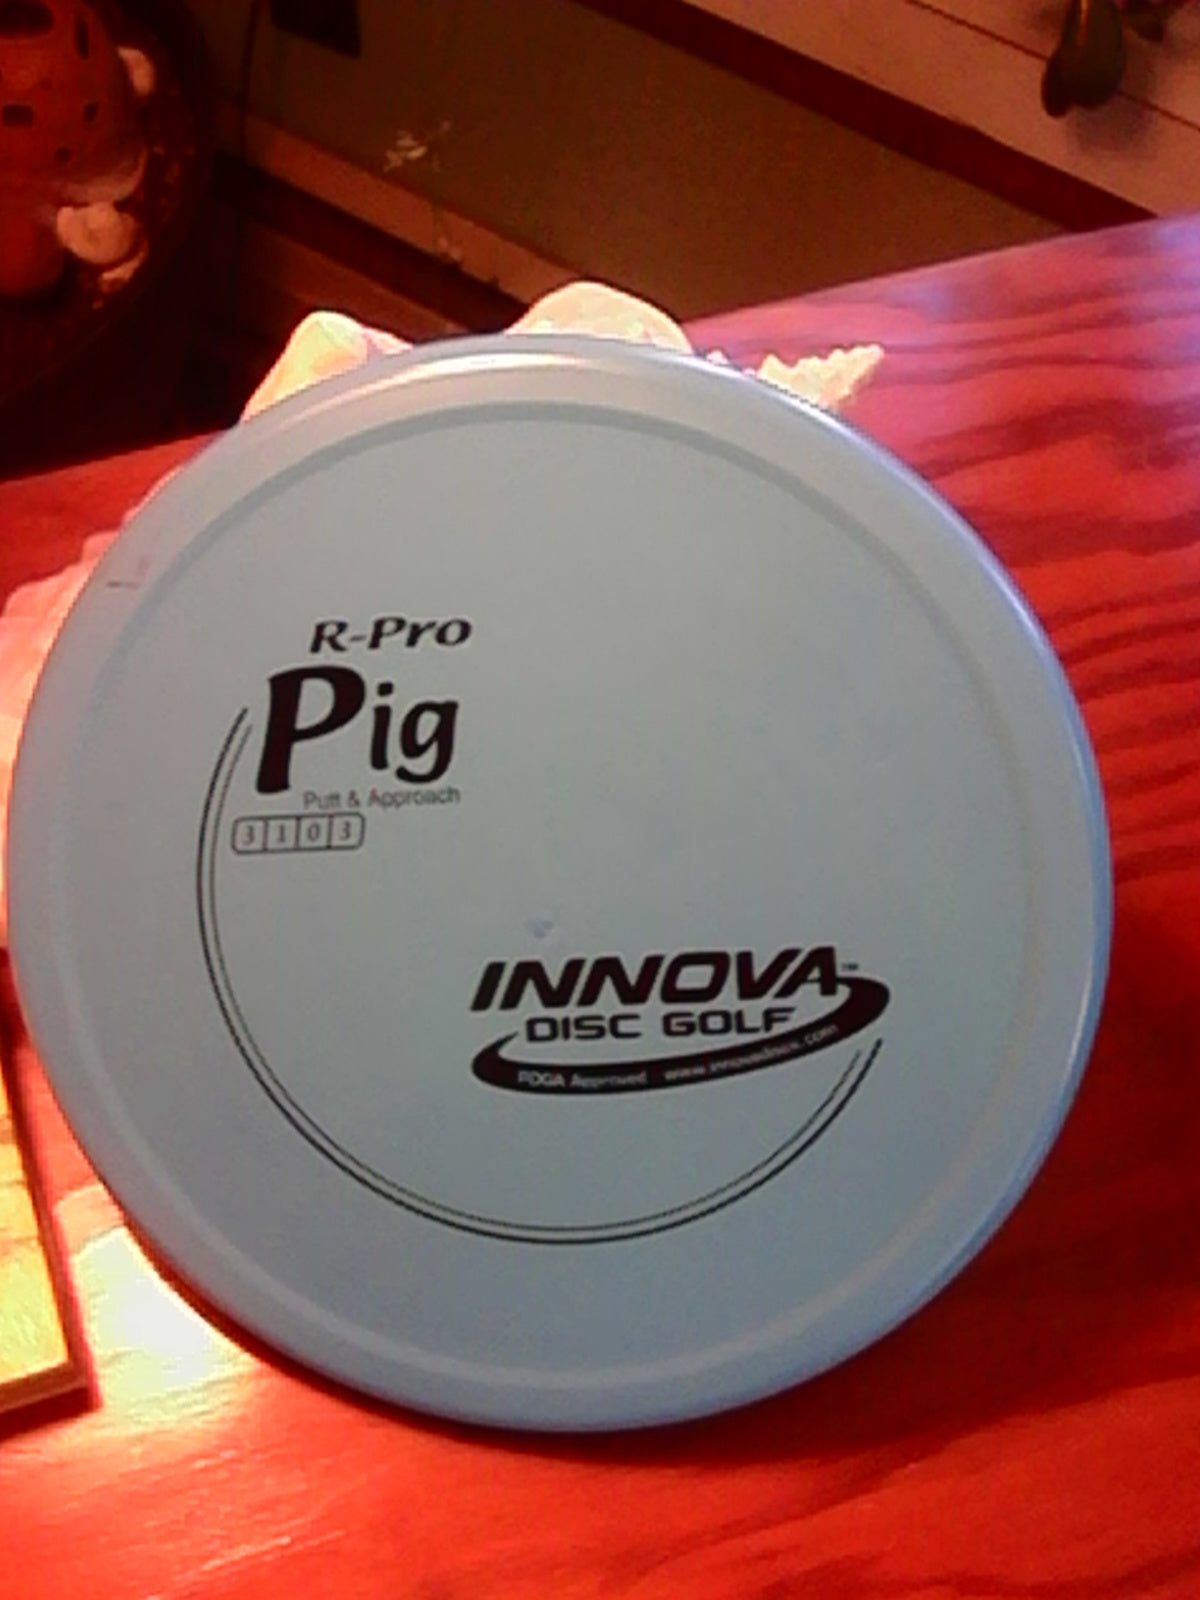 Innova R-Pro Pig 175 Grams